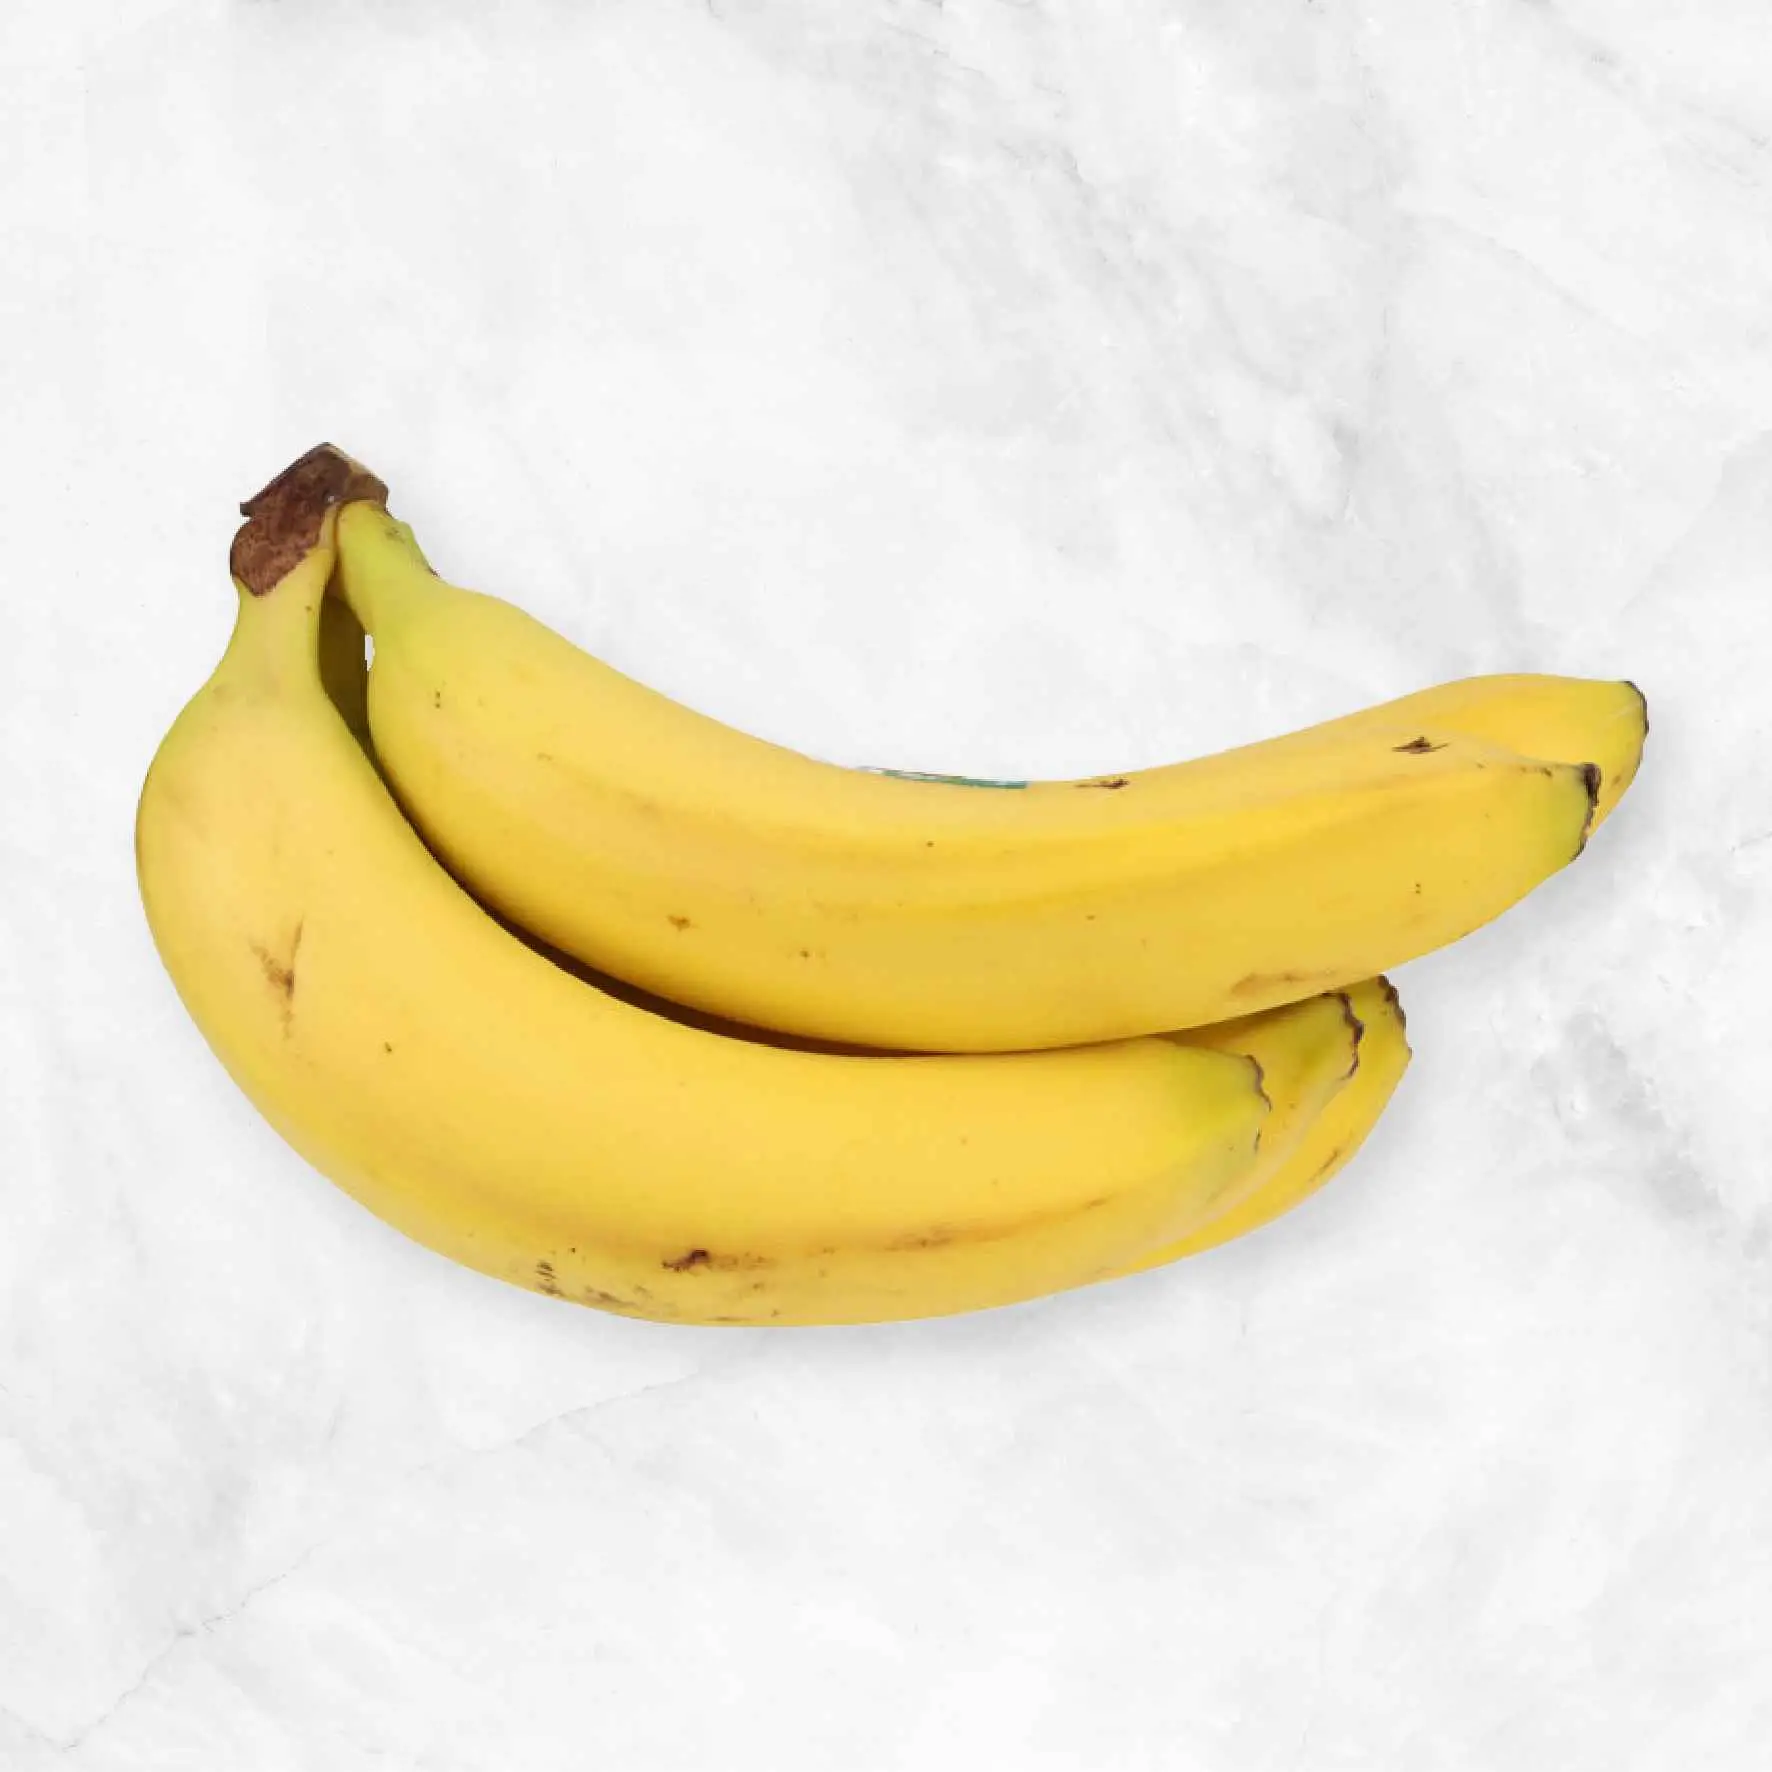 Organic & Fair Trade Bananas